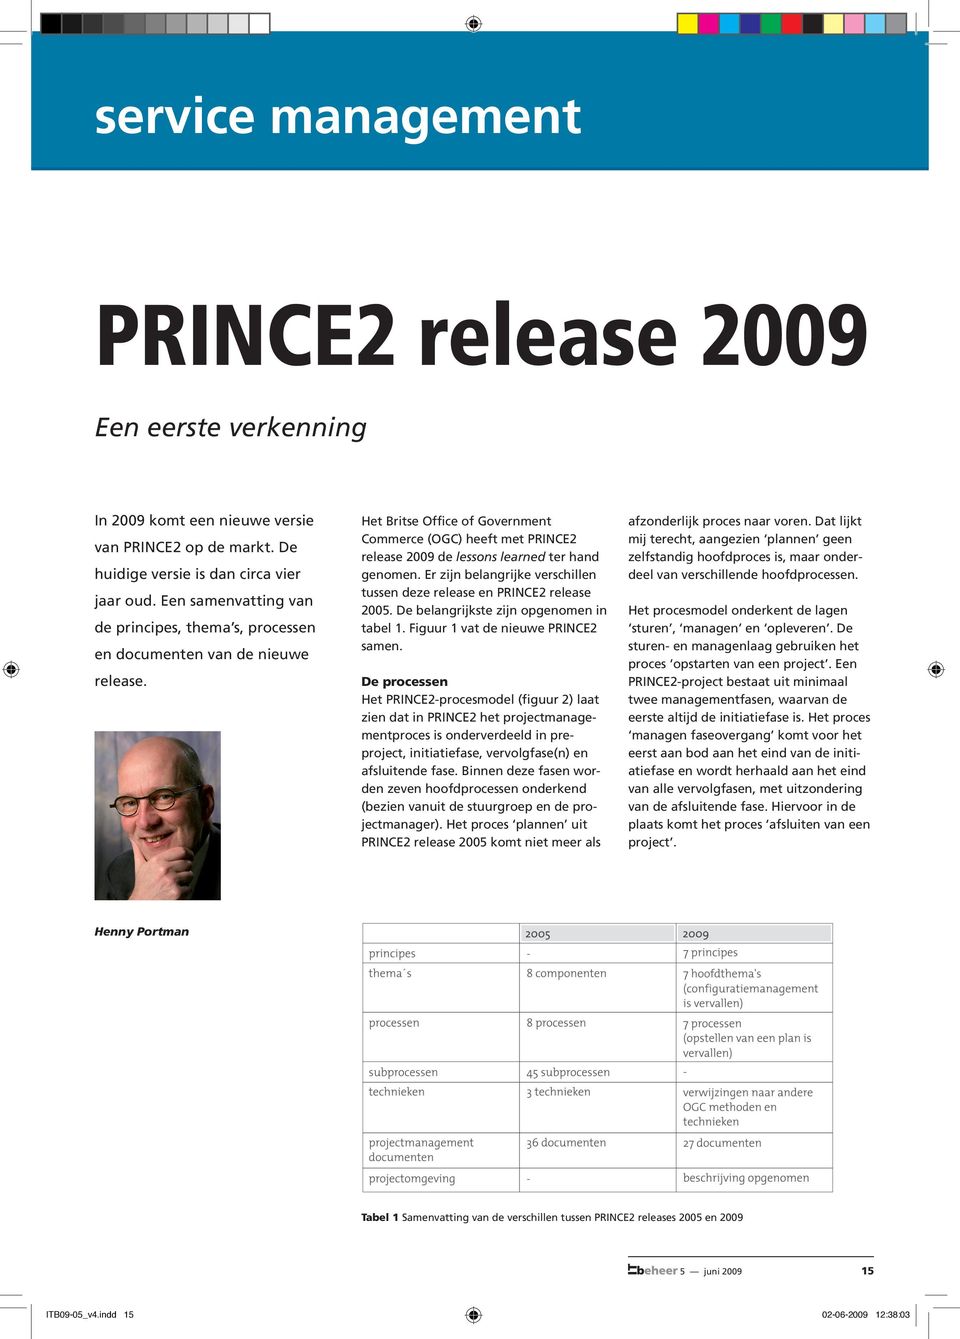 Het Britse Office of Government Commerce (OGC) heeft met PRINCE2 release 2009 de lessons learned ter hand genomen. Er zijn belangrijke verschillen tussen deze release en PRINCE2 release 2005.